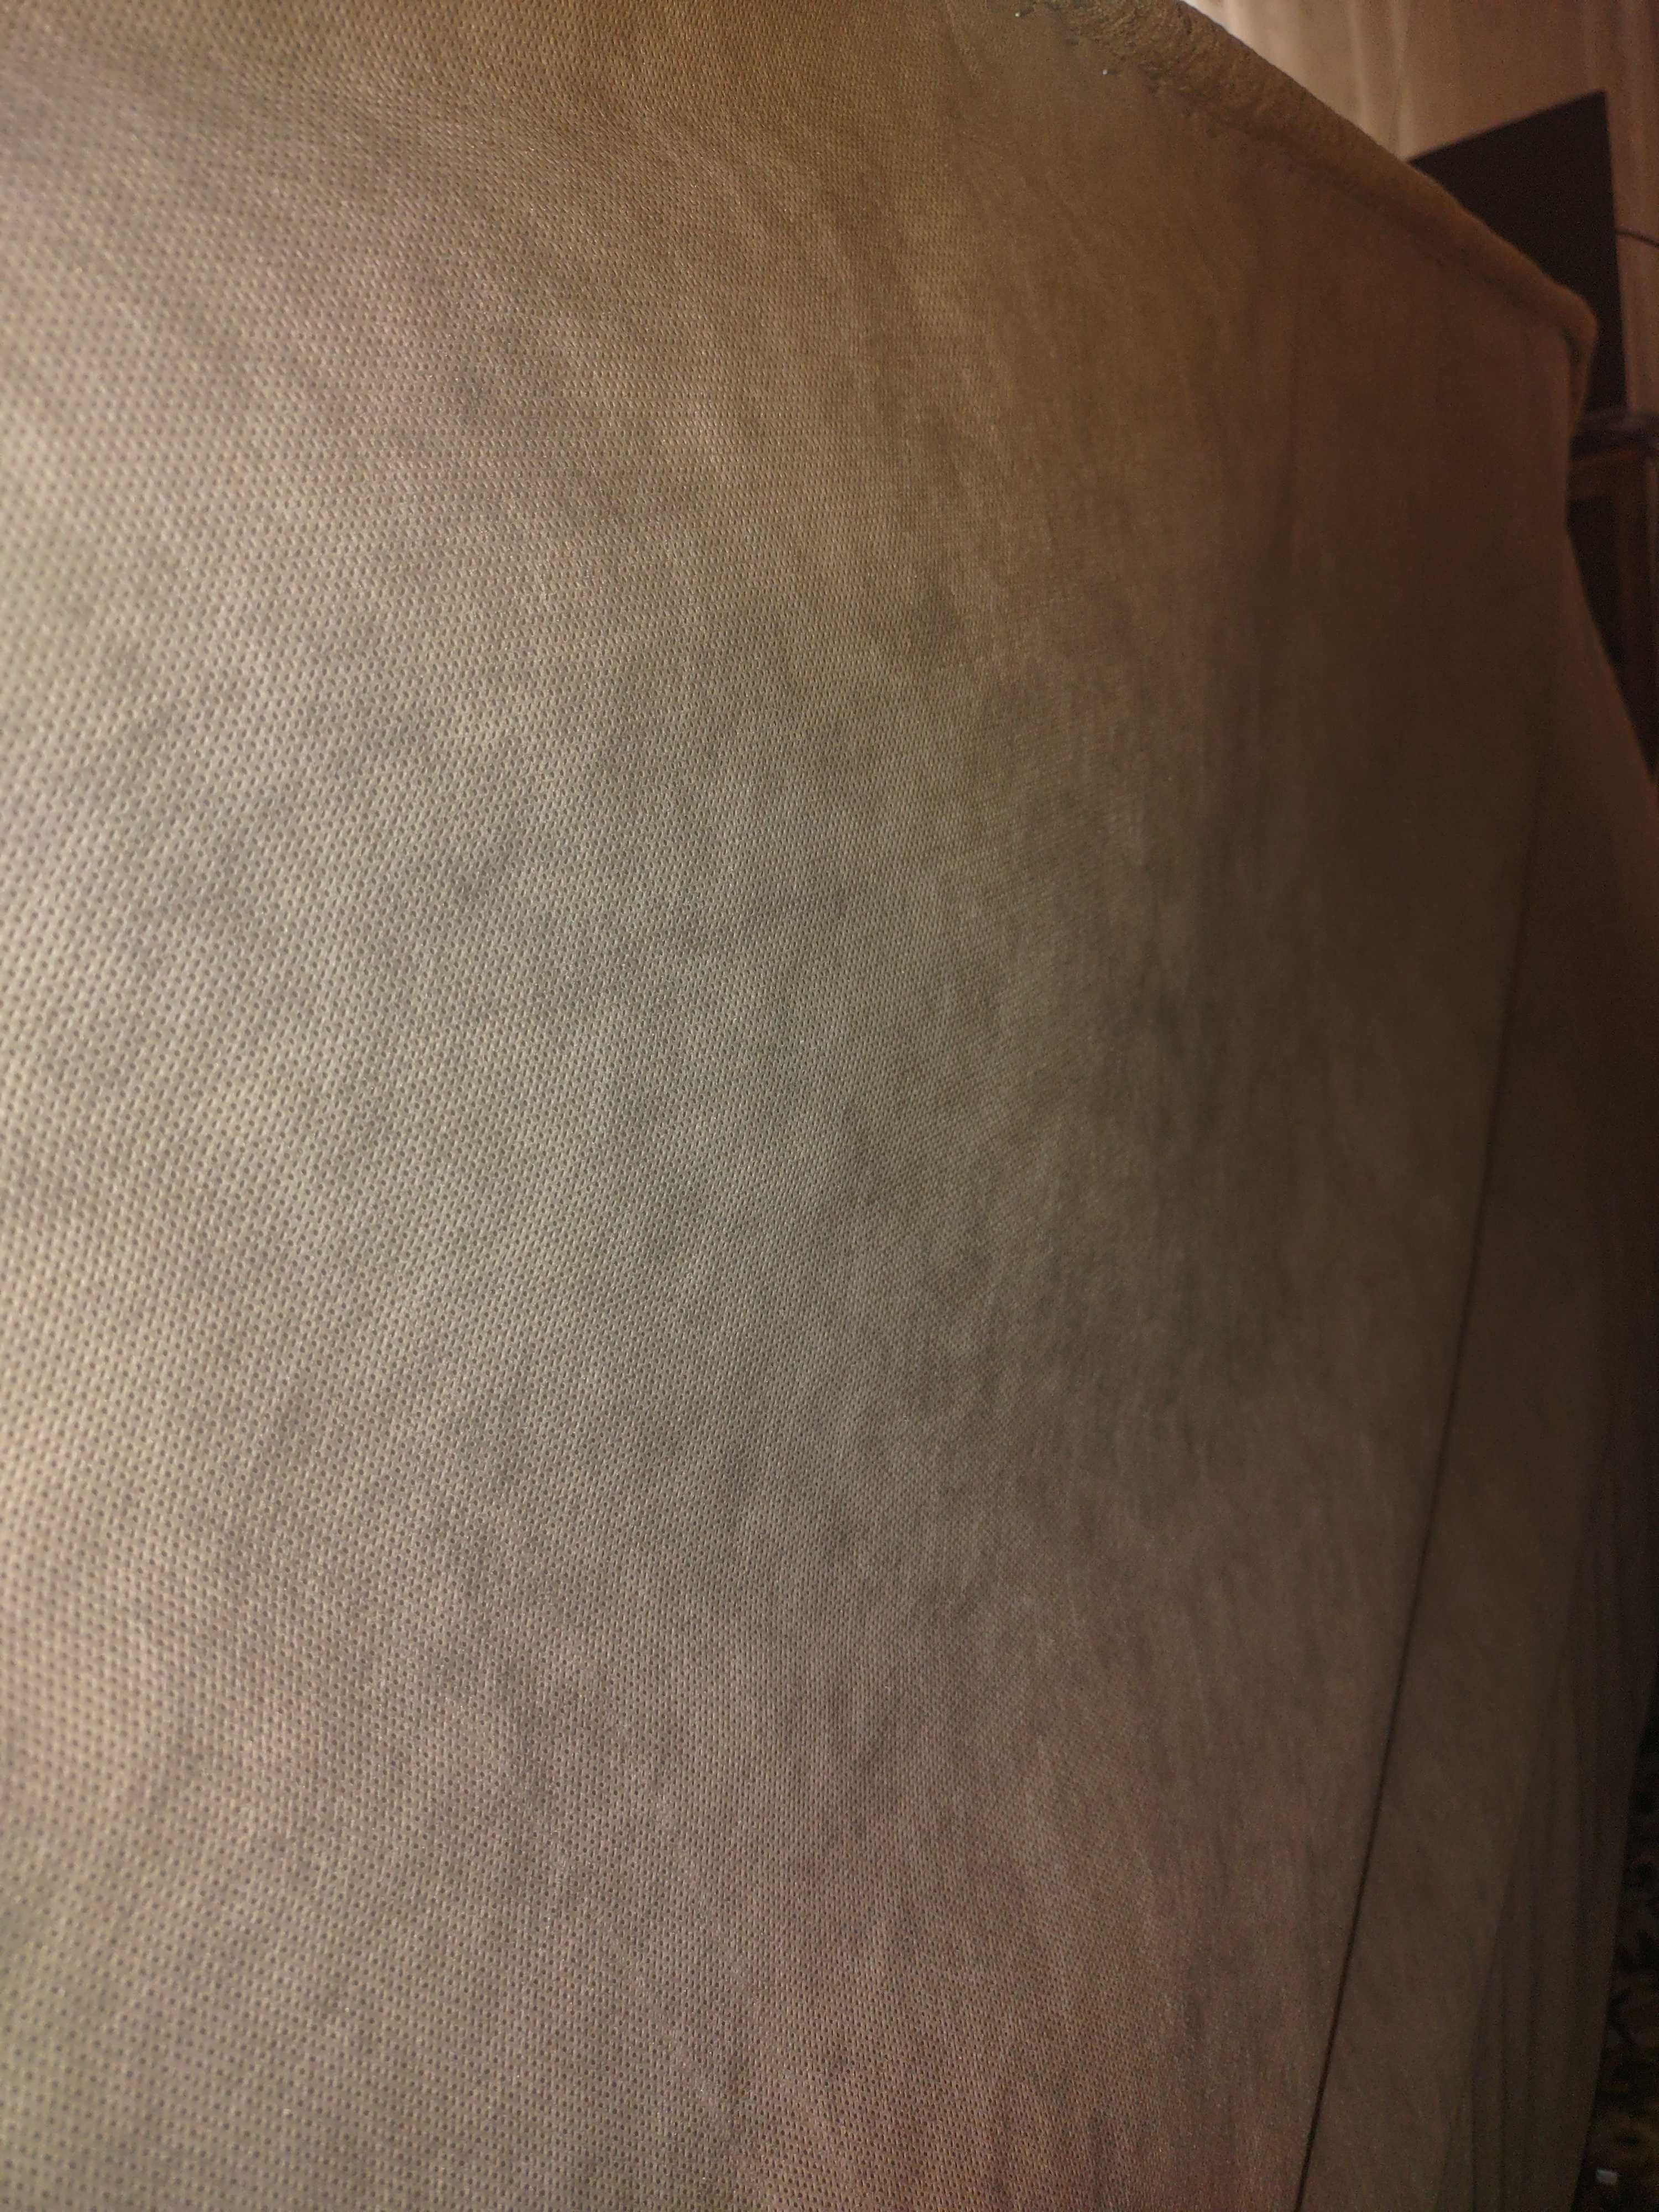 Wersalka 120/190 sprężyny bonel tapicerowane łóżko